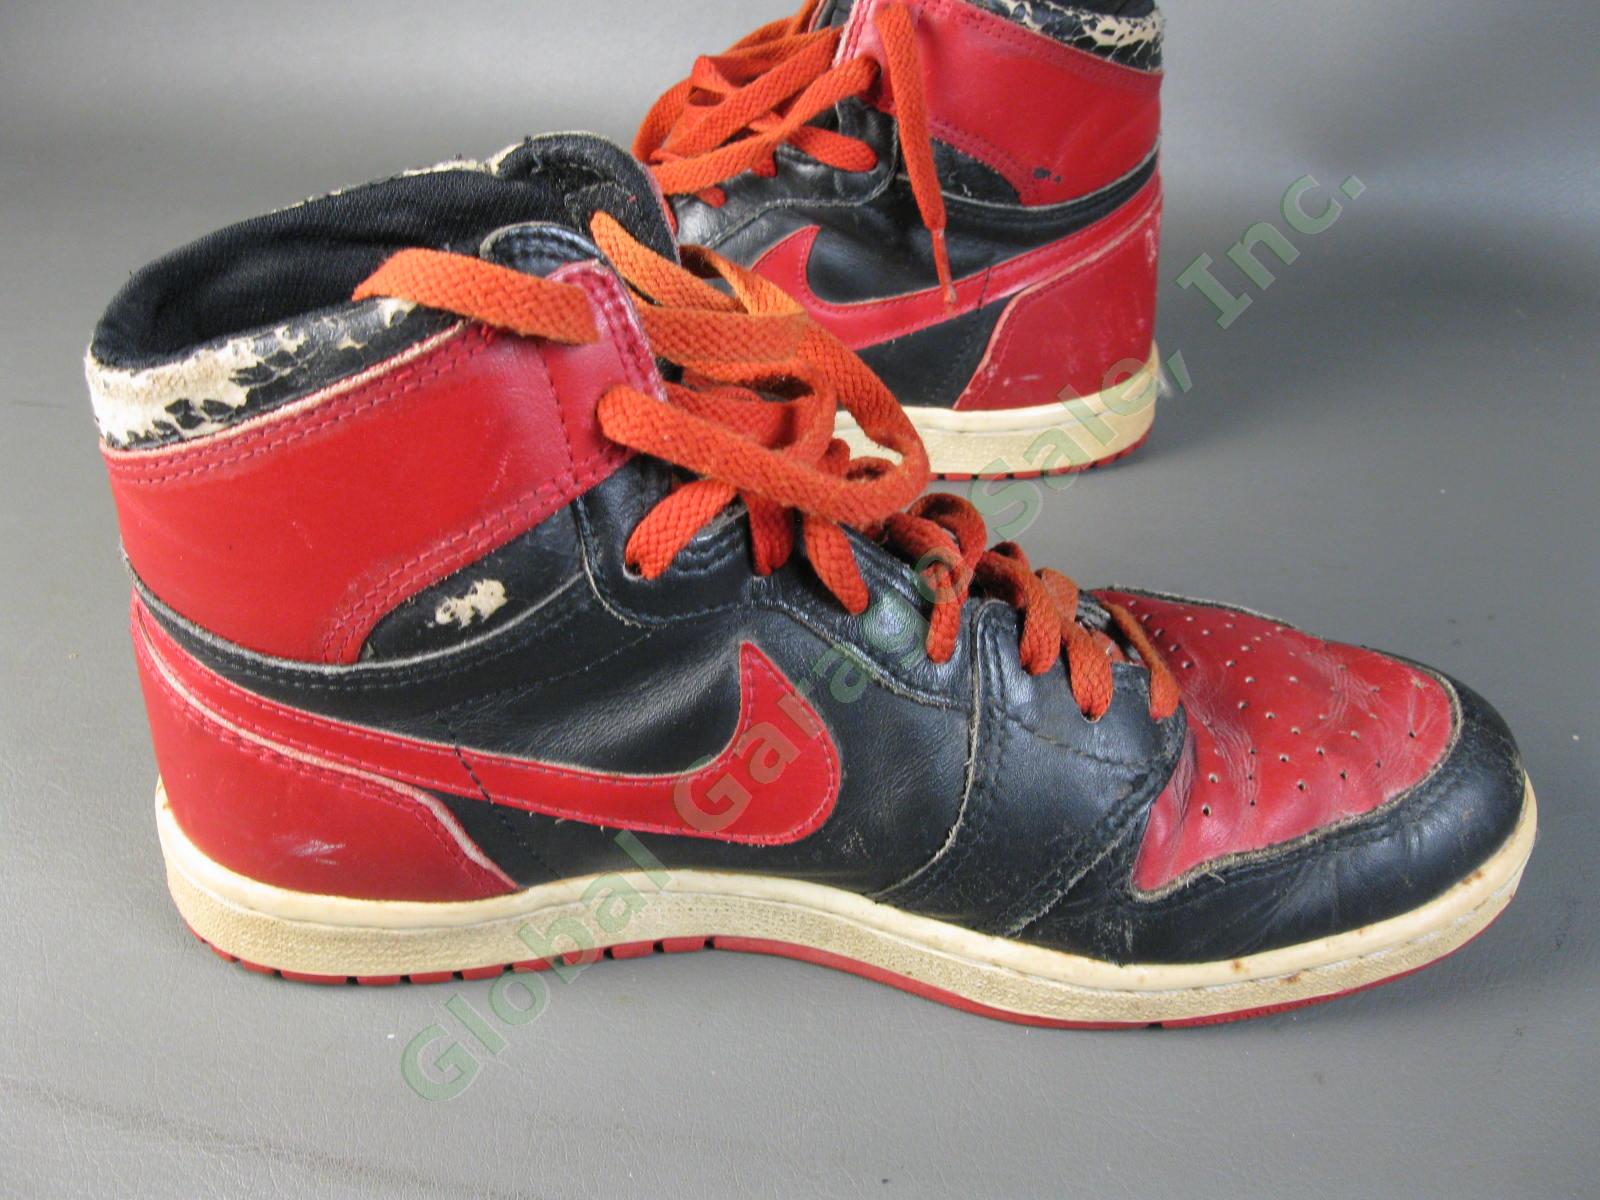 ORIGINAL 1985 Nike Air Jordan 1 Bred Black Red Chicago Bulls BANNED OG MJ AJI NR 14